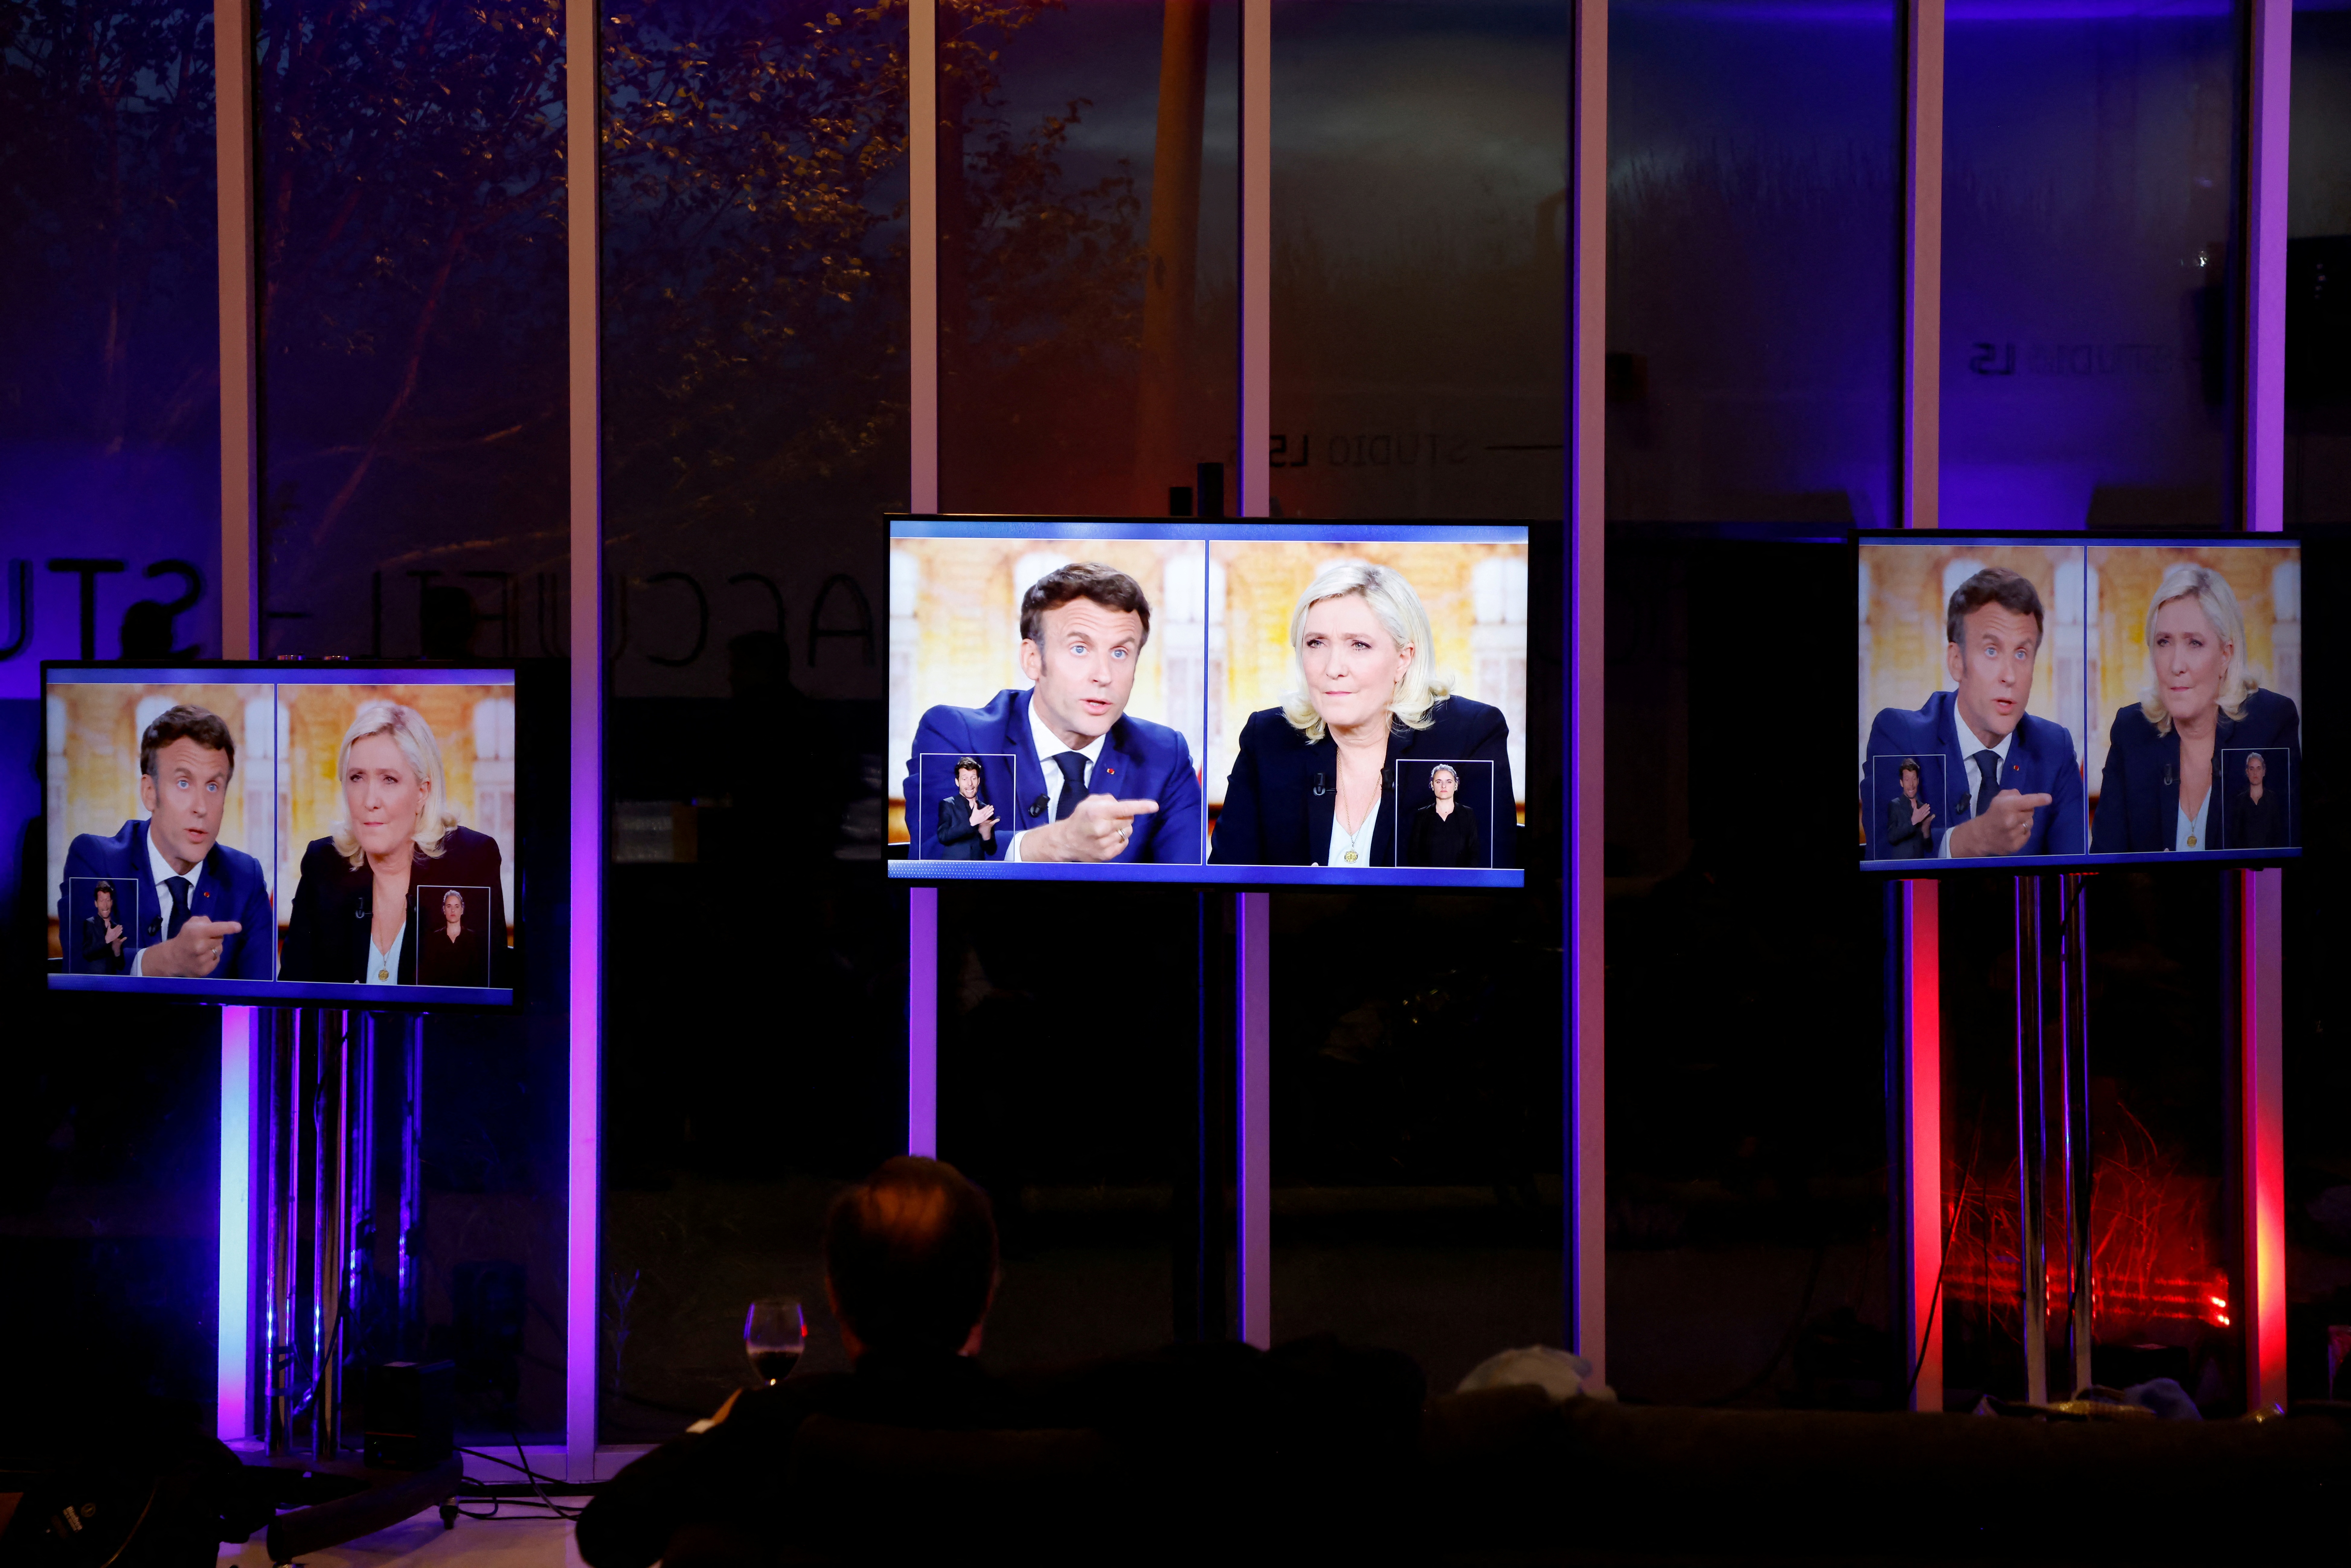 Le débat de ce soir entre Emmanuel Macron et Marine Le Pen à la télévision française est la dernière grande chance pour le candidat d'extrême droite (Ludovic Marin/Pool via REUTERS)